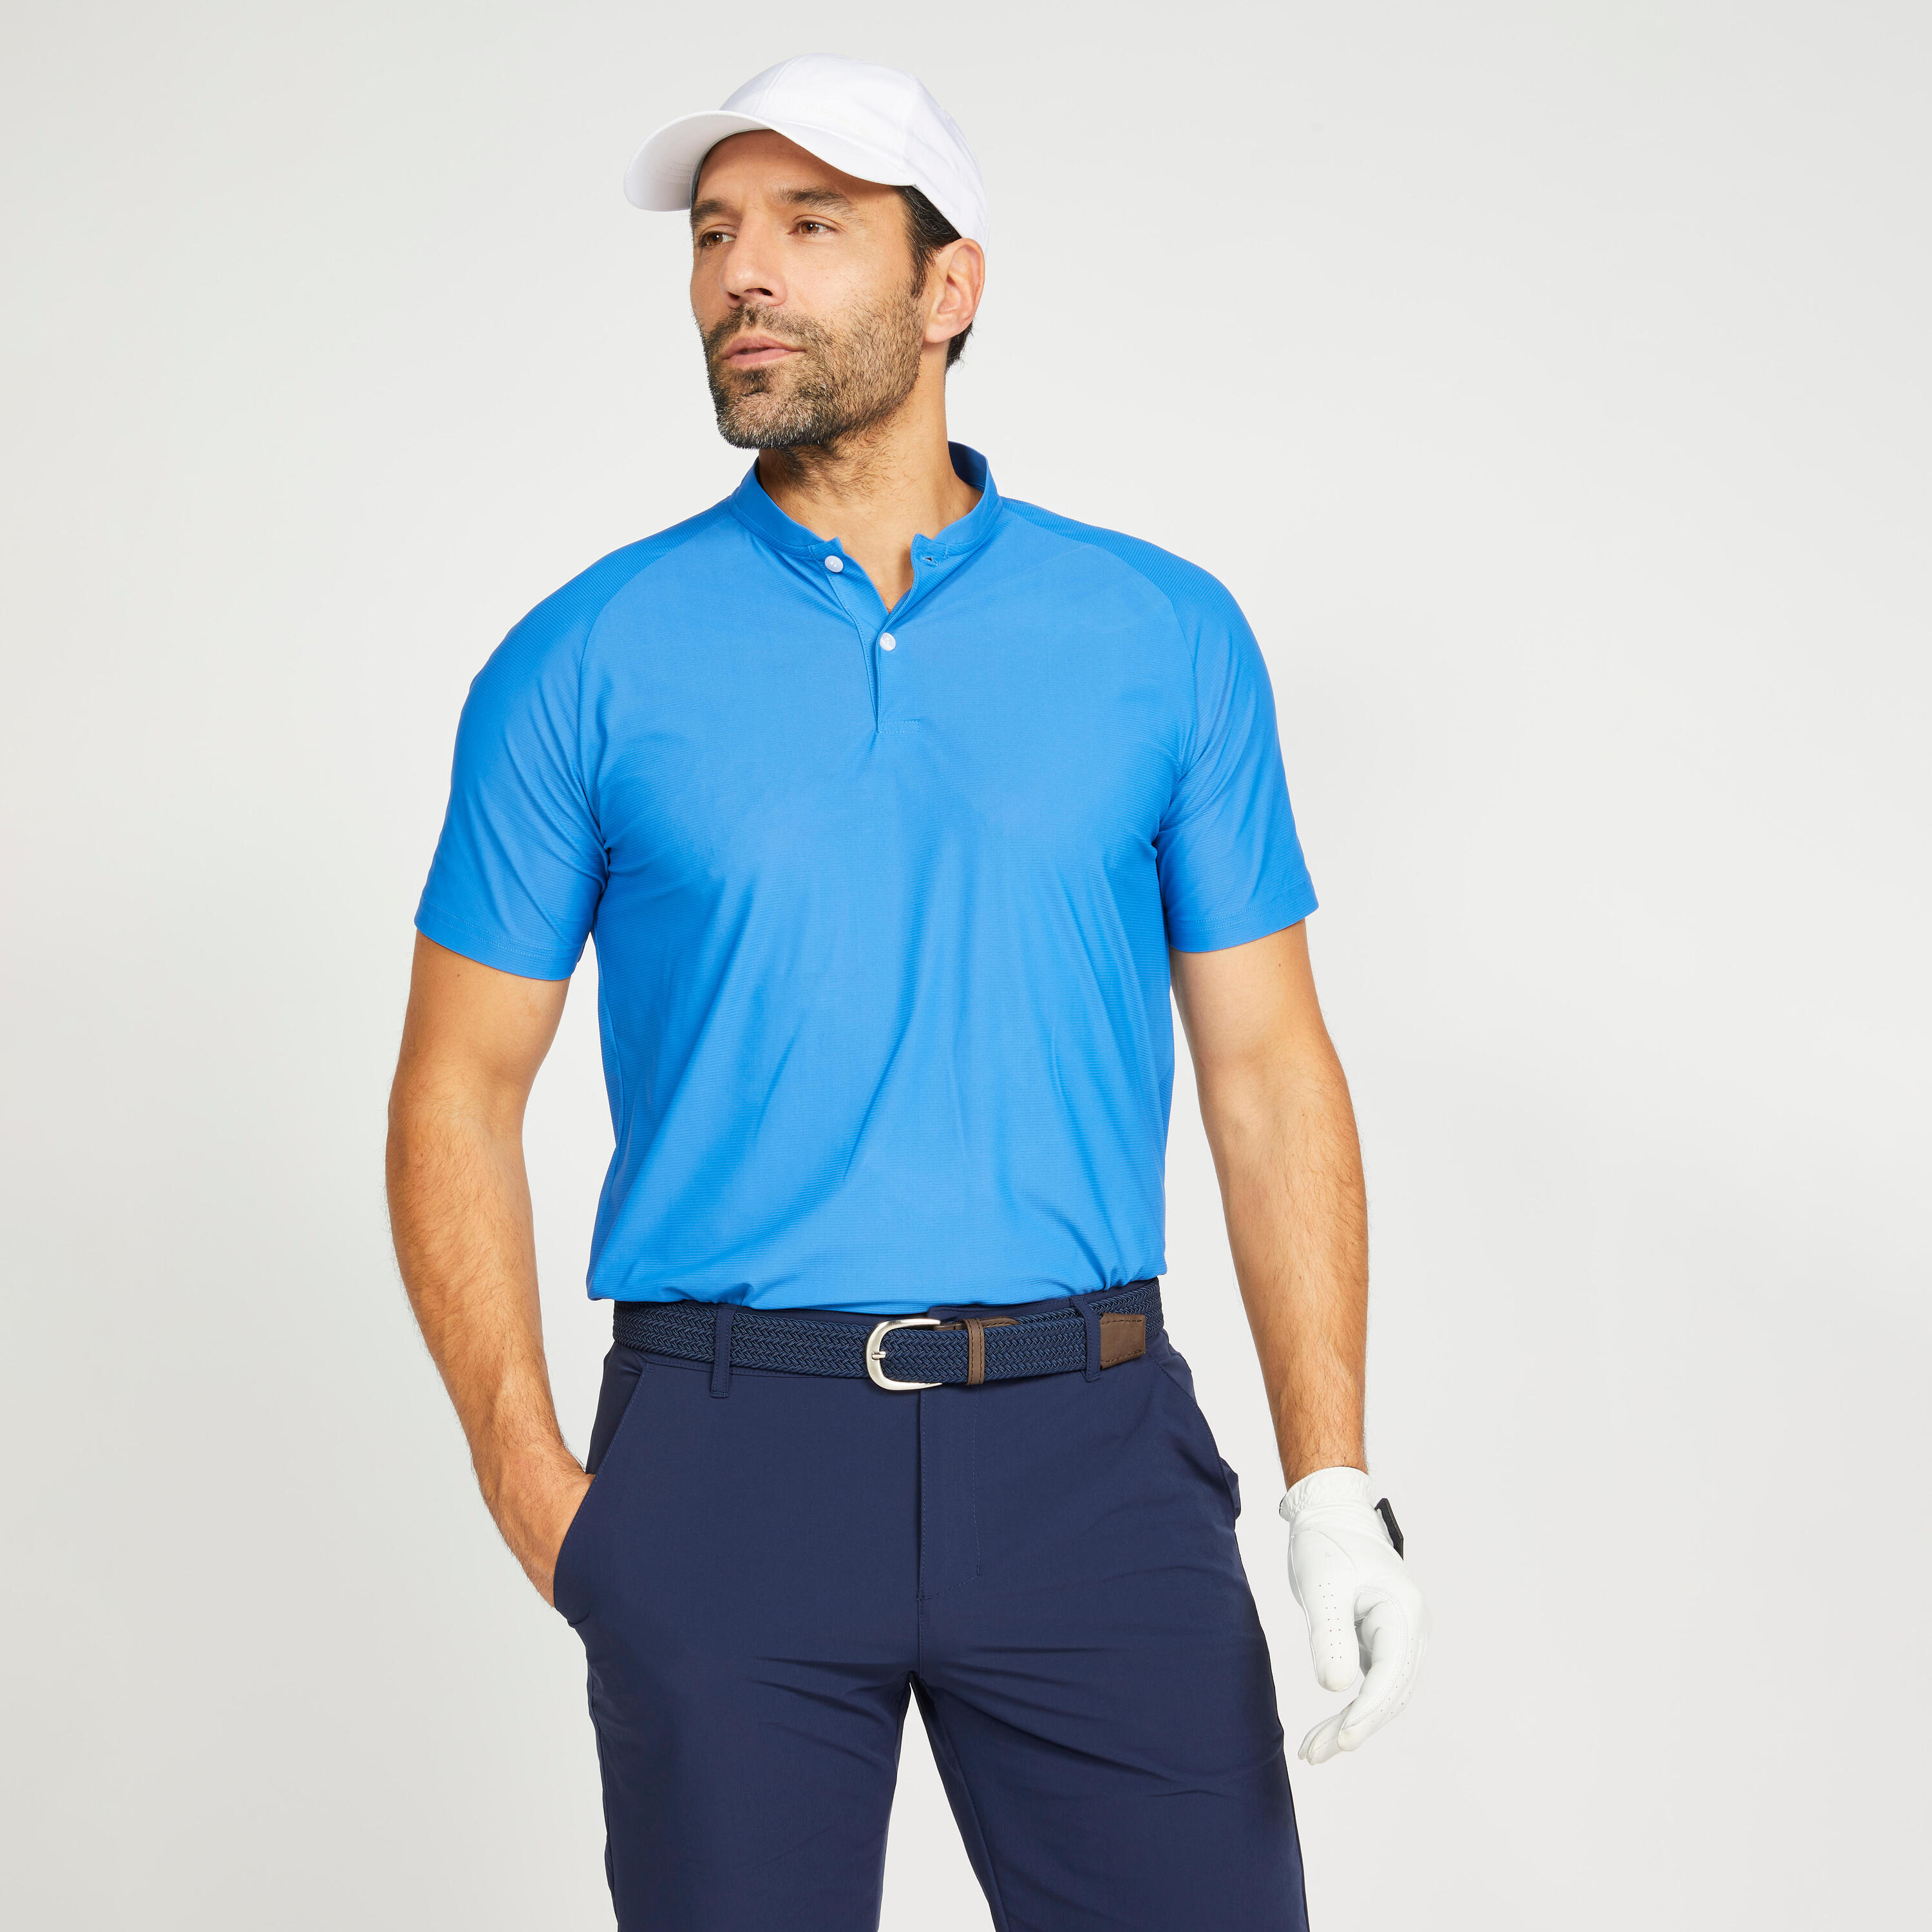 Men's golf short sleeve polo shirt - WW500 blue 1/8